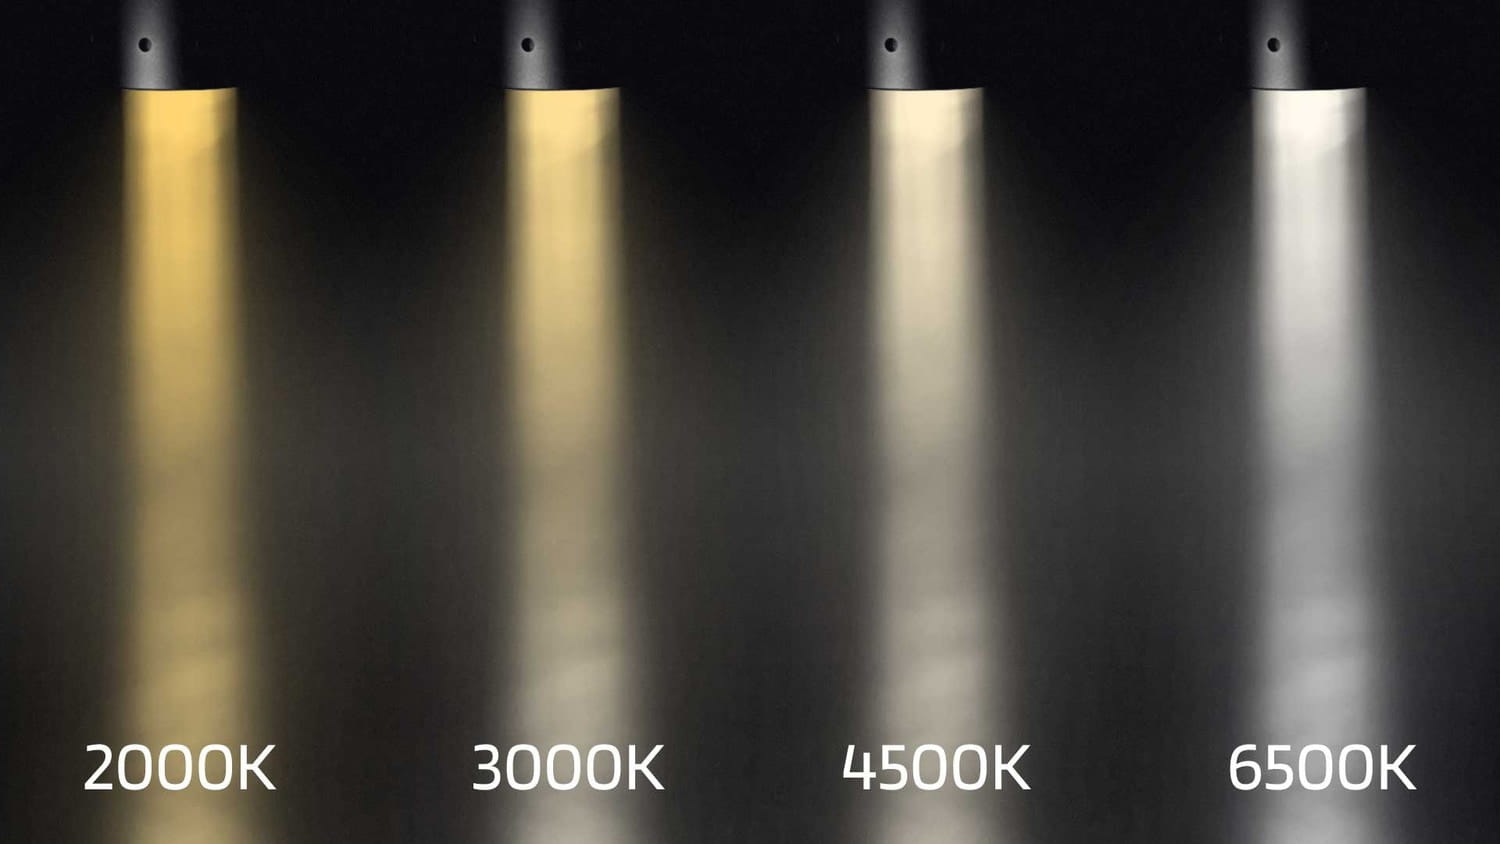 Đèn pin có nhiệt độ màu 6500K là một trong những loại đèn phổ biến được sử dụng rộng rãi